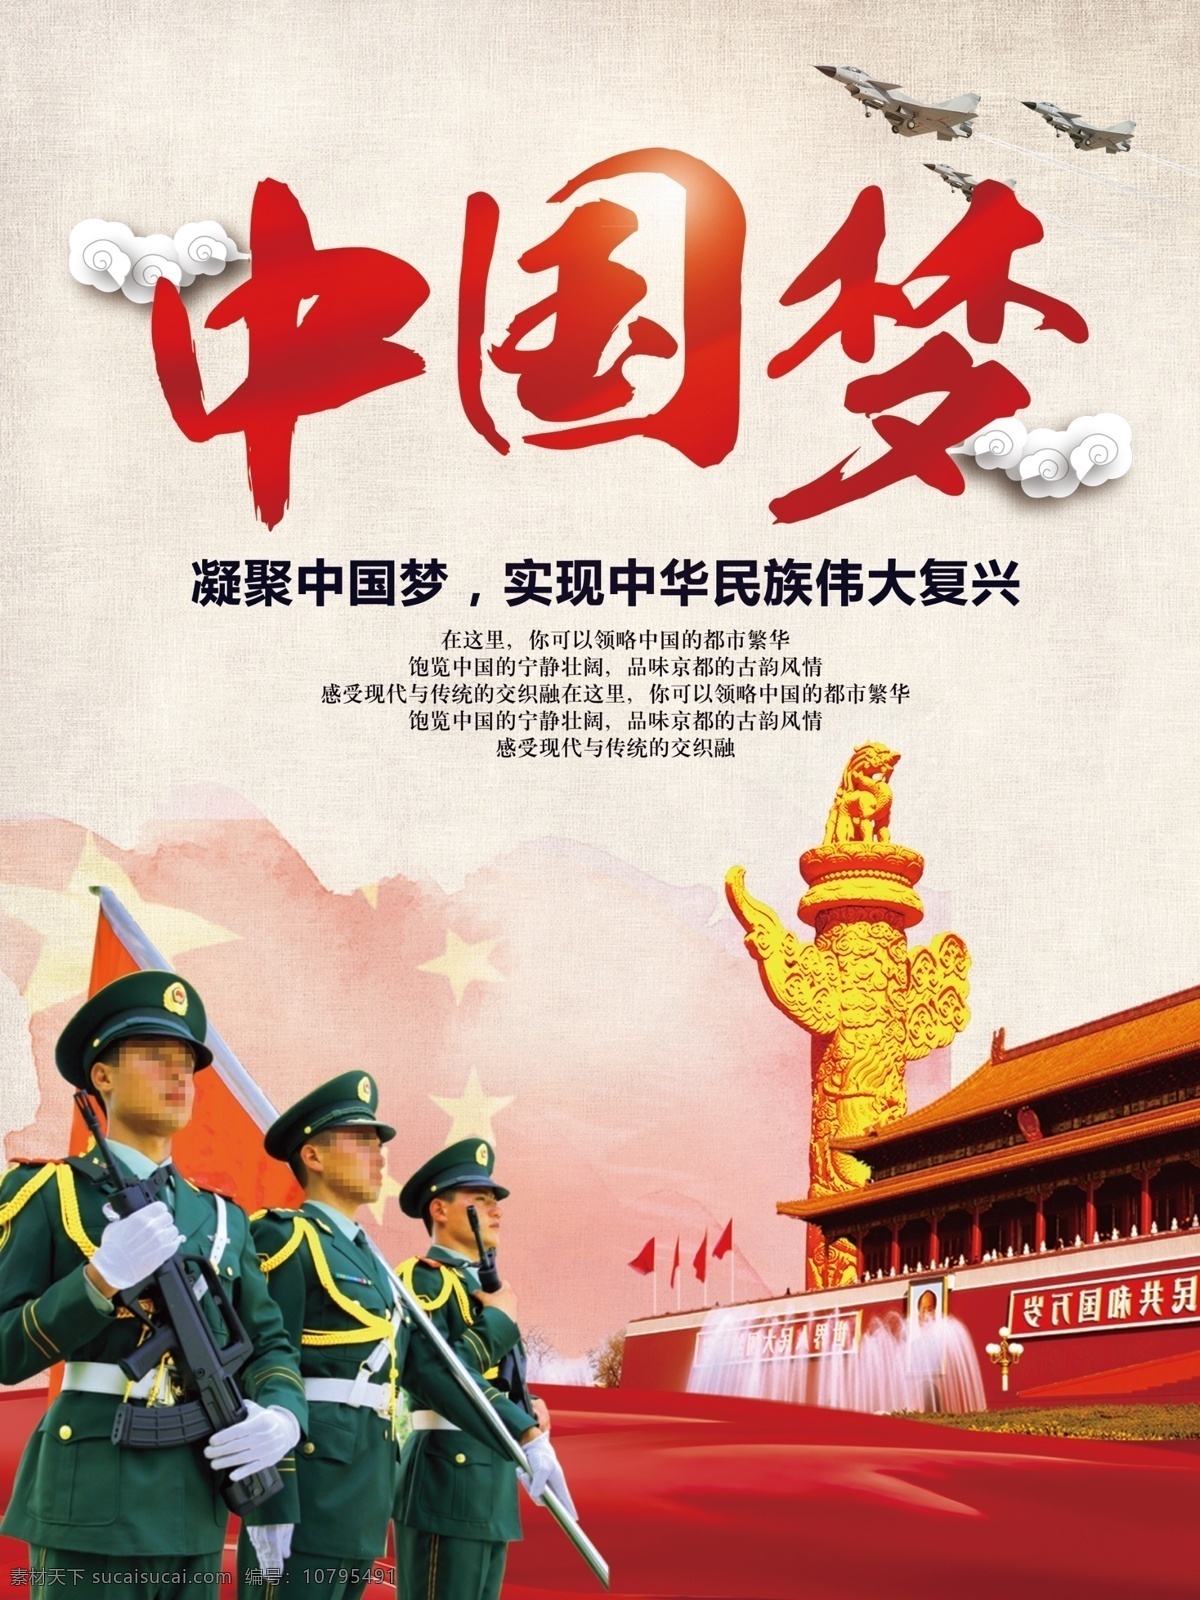 简约 中国 风 梦 强军 党建 海报 中国风 中国梦 强军梦